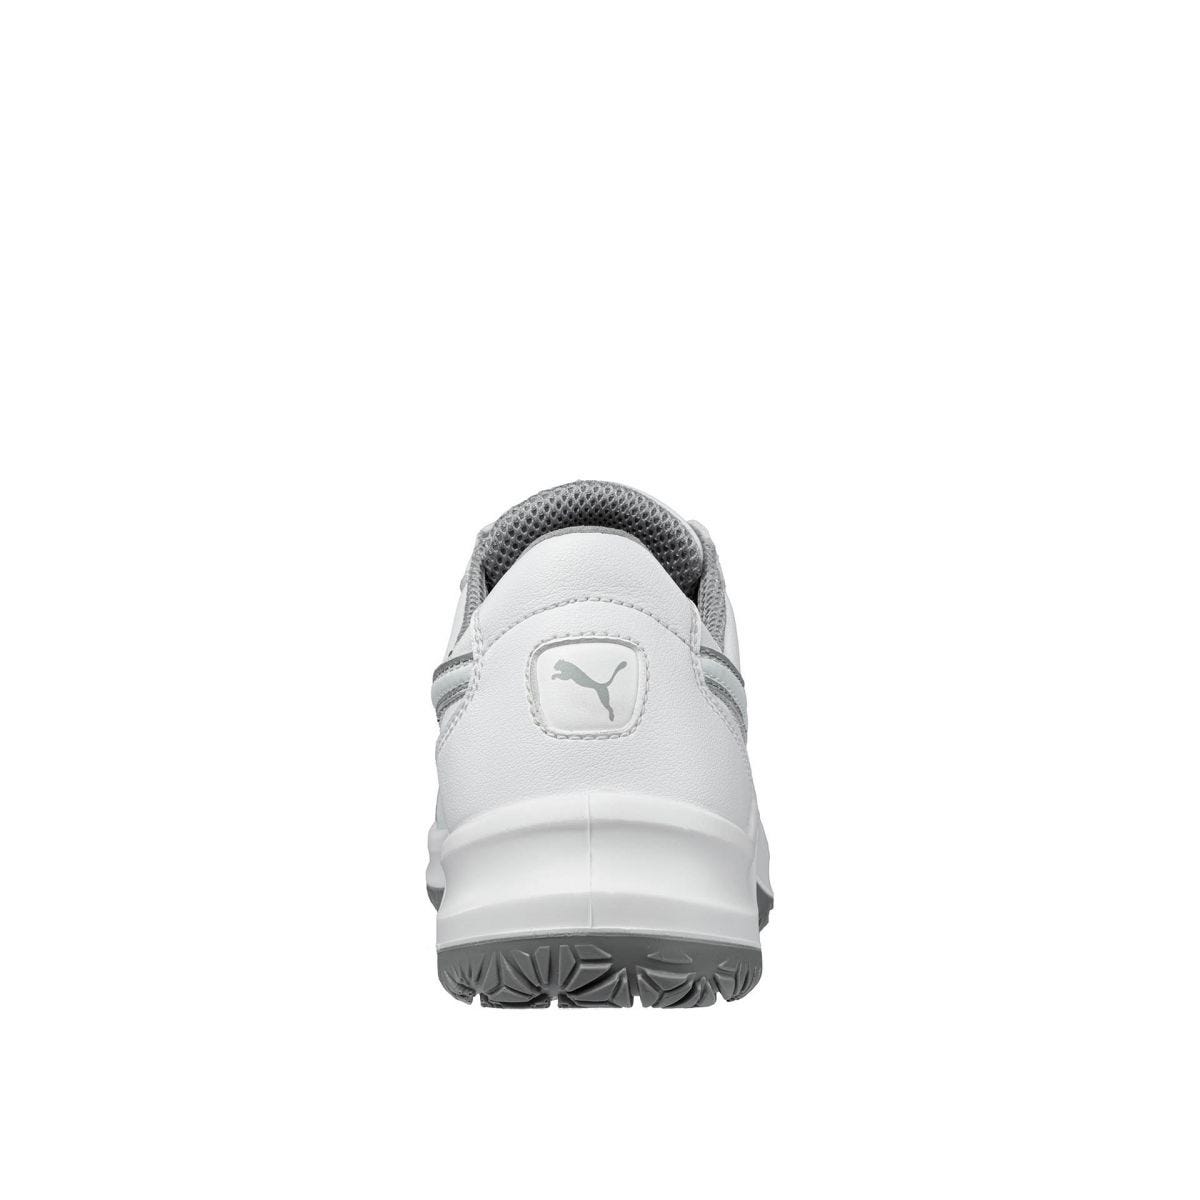 Chaussures de sécurité Clarity low S2 SRC - Puma - Taille 39 1